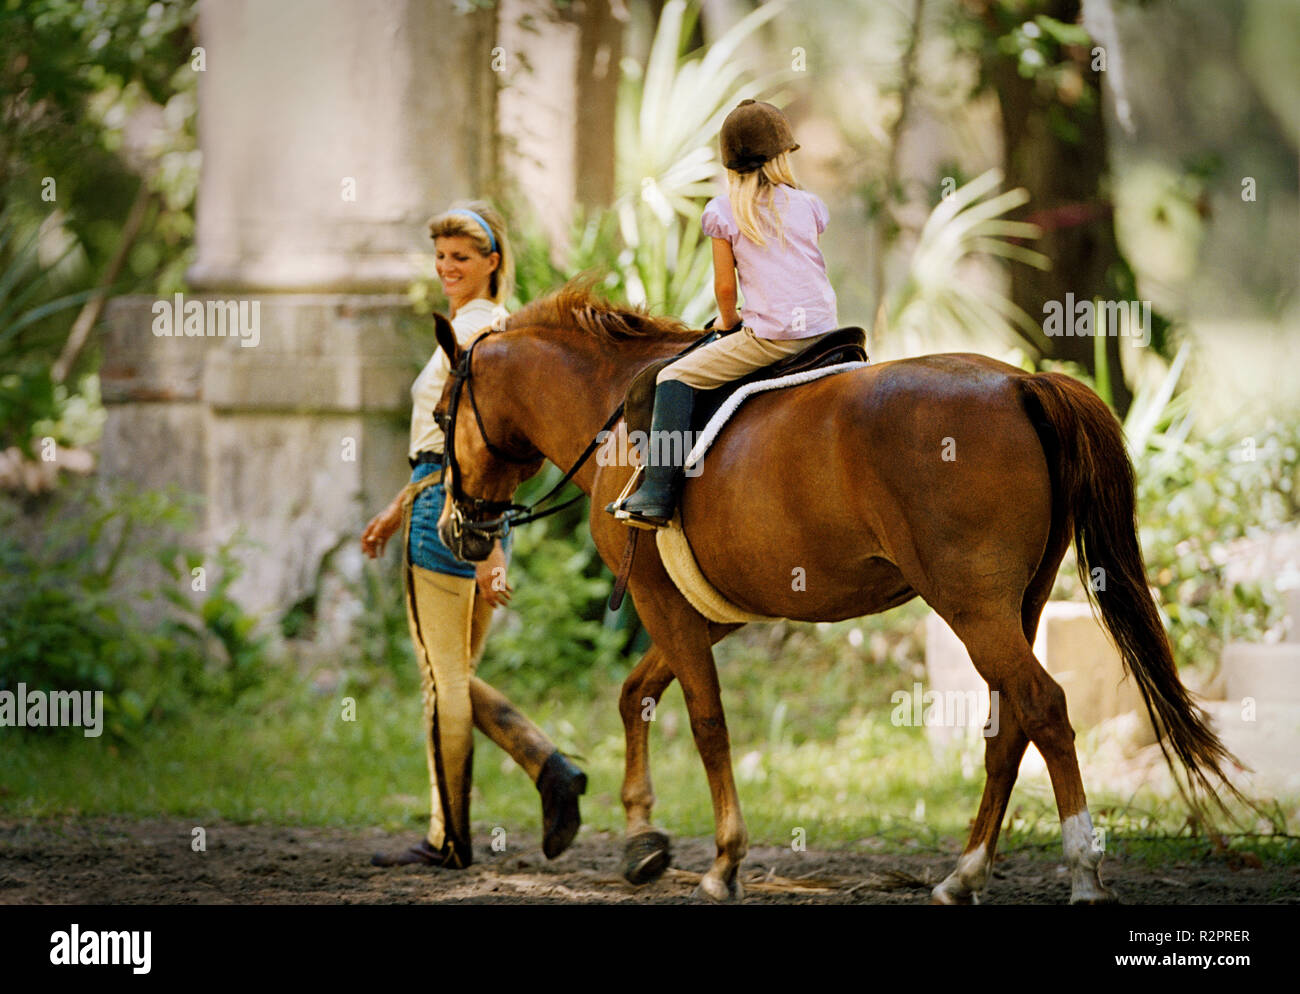 Mother walking alongside her daughter on horseback Stock Photo